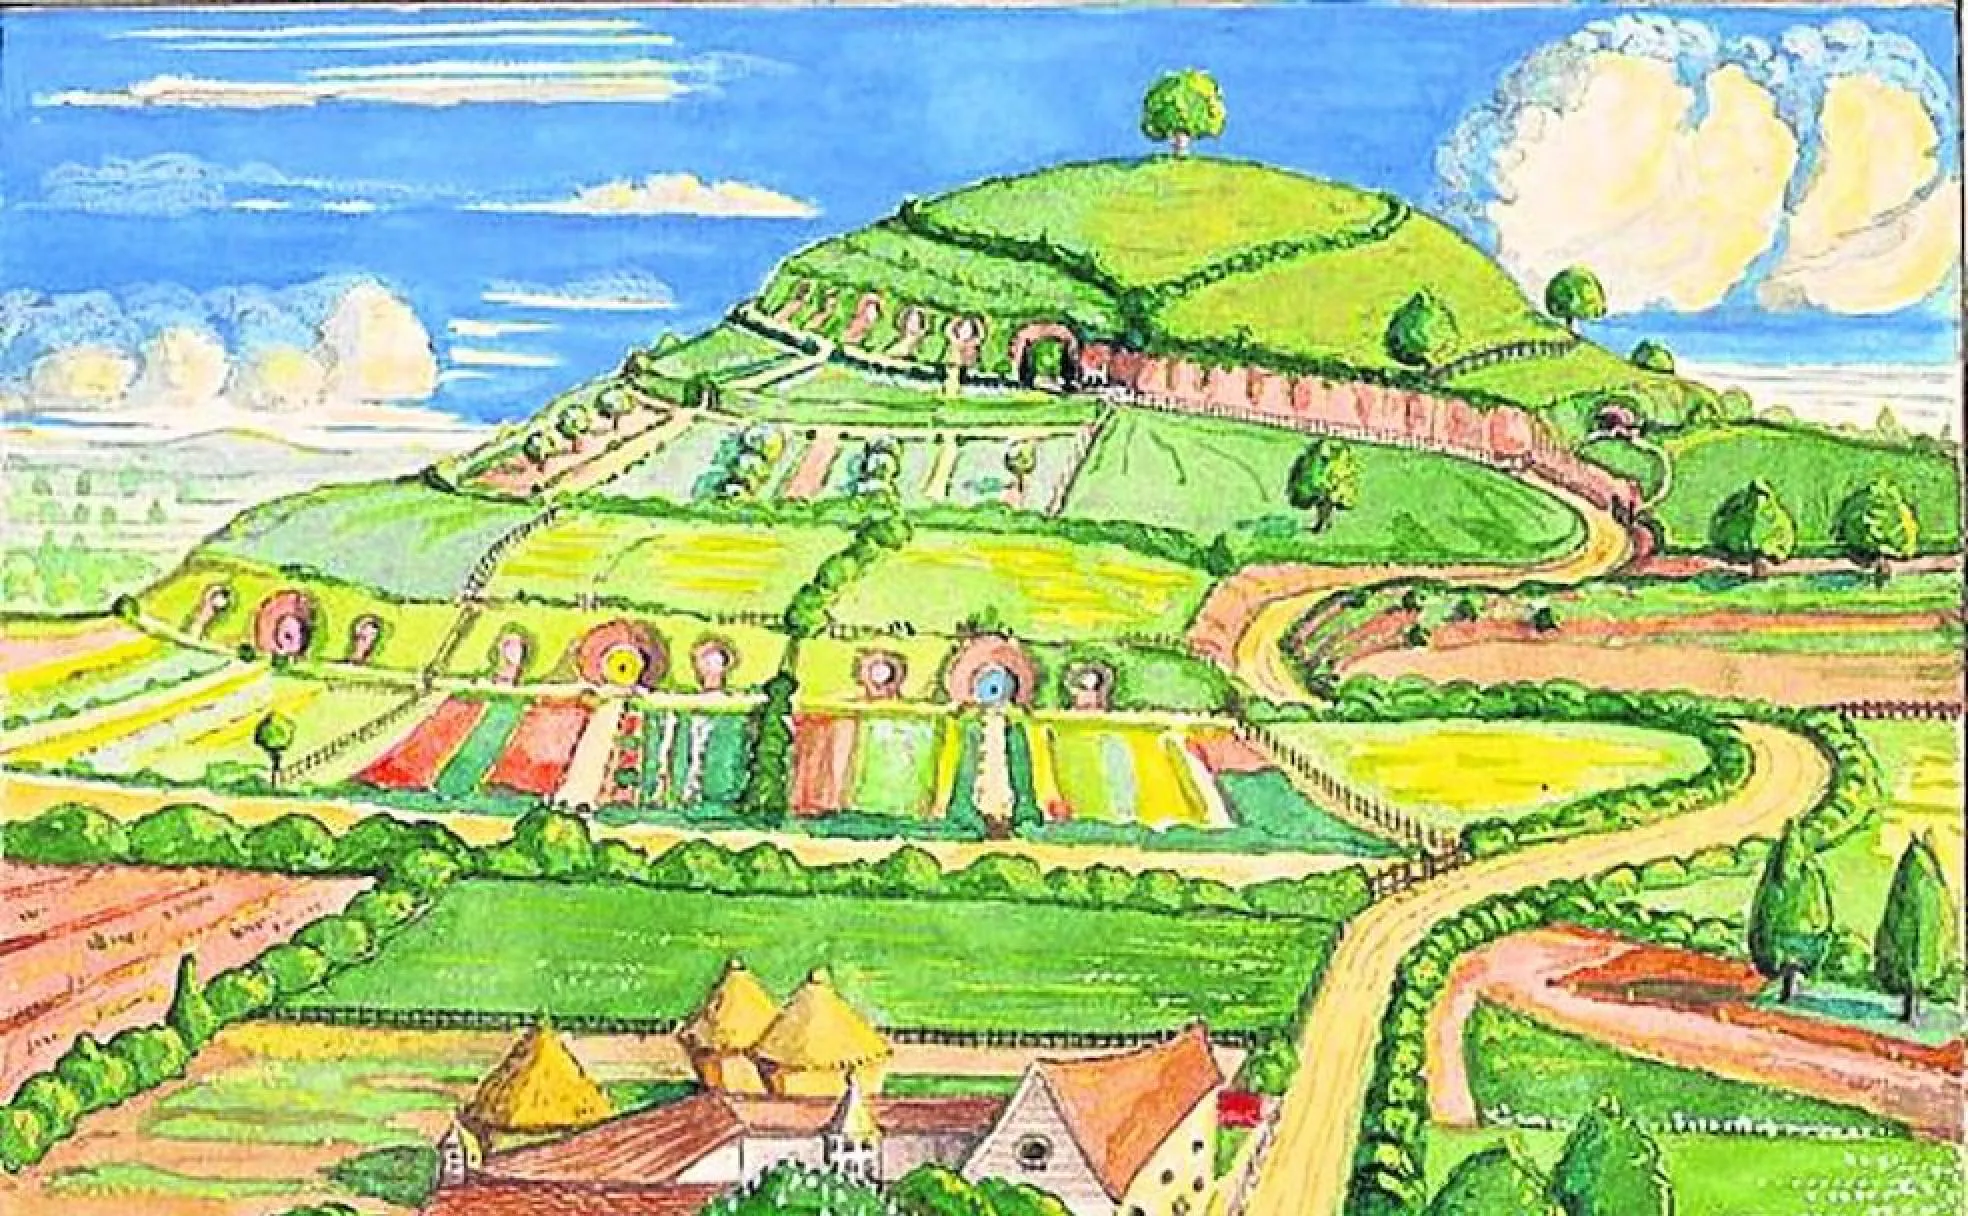 Ilustración de Tolkien que muestra su visión de la colina de Hobbyton.